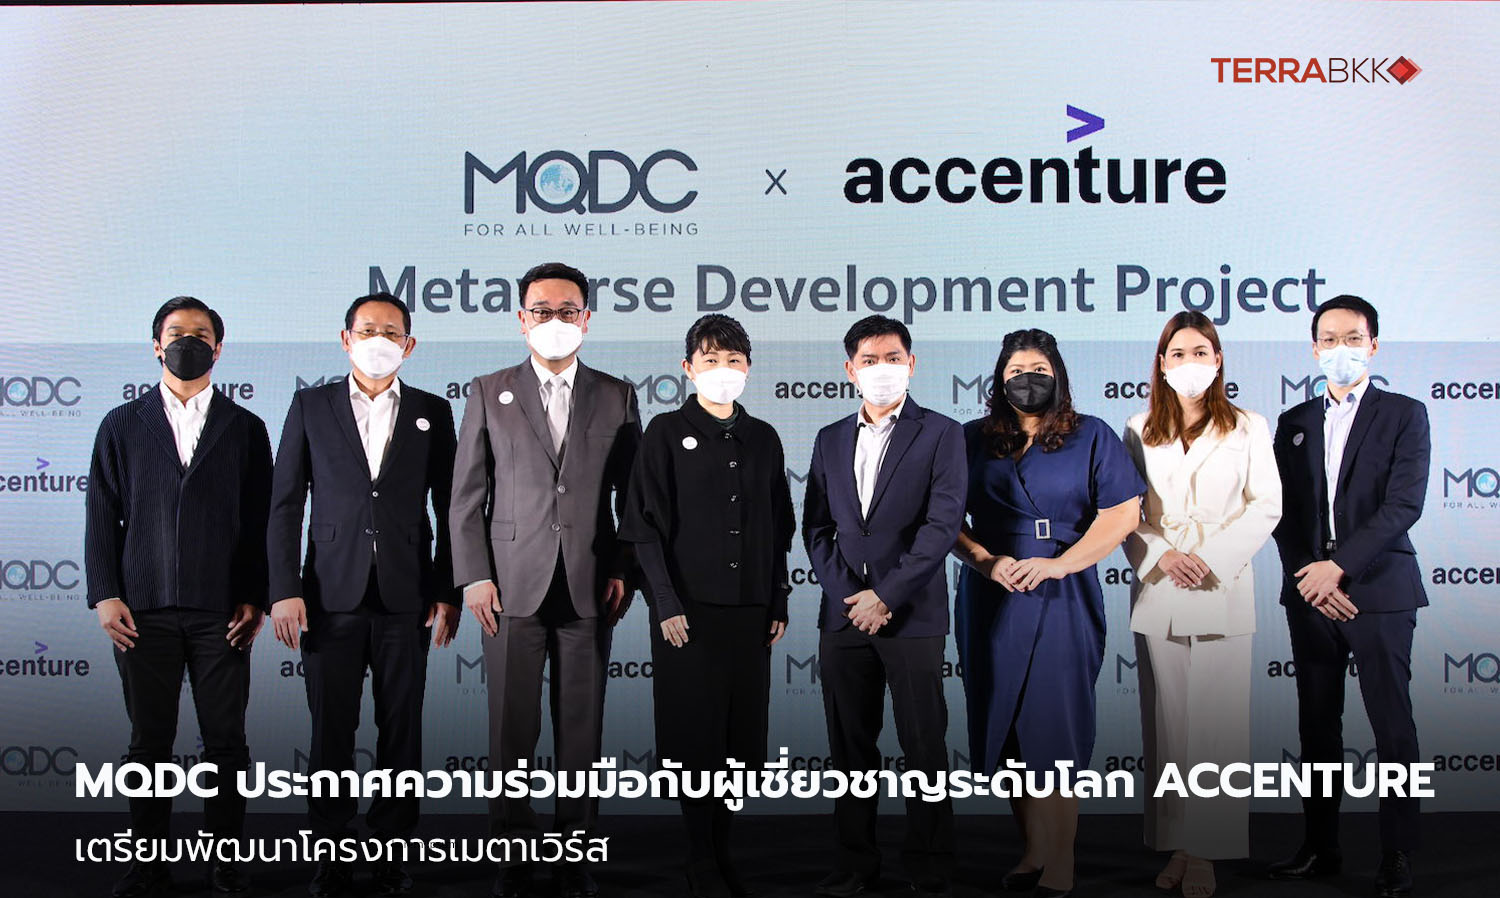 MQDC ประกาศความร่วมมือกับผู้เชี่ยวชาญระดับโลก Accenture เตรียมพัฒนาโครงการเมตาเวิร์ส MQDC เดินหน้าสู่ธุรกิจแห่งอนาคต พัฒนาโครงการเมตาเวิร์สเพื่อนำเสนอประสบการณ์ที่ไม่ใช่เพียงแค่อสังหาริมทรัพย์  